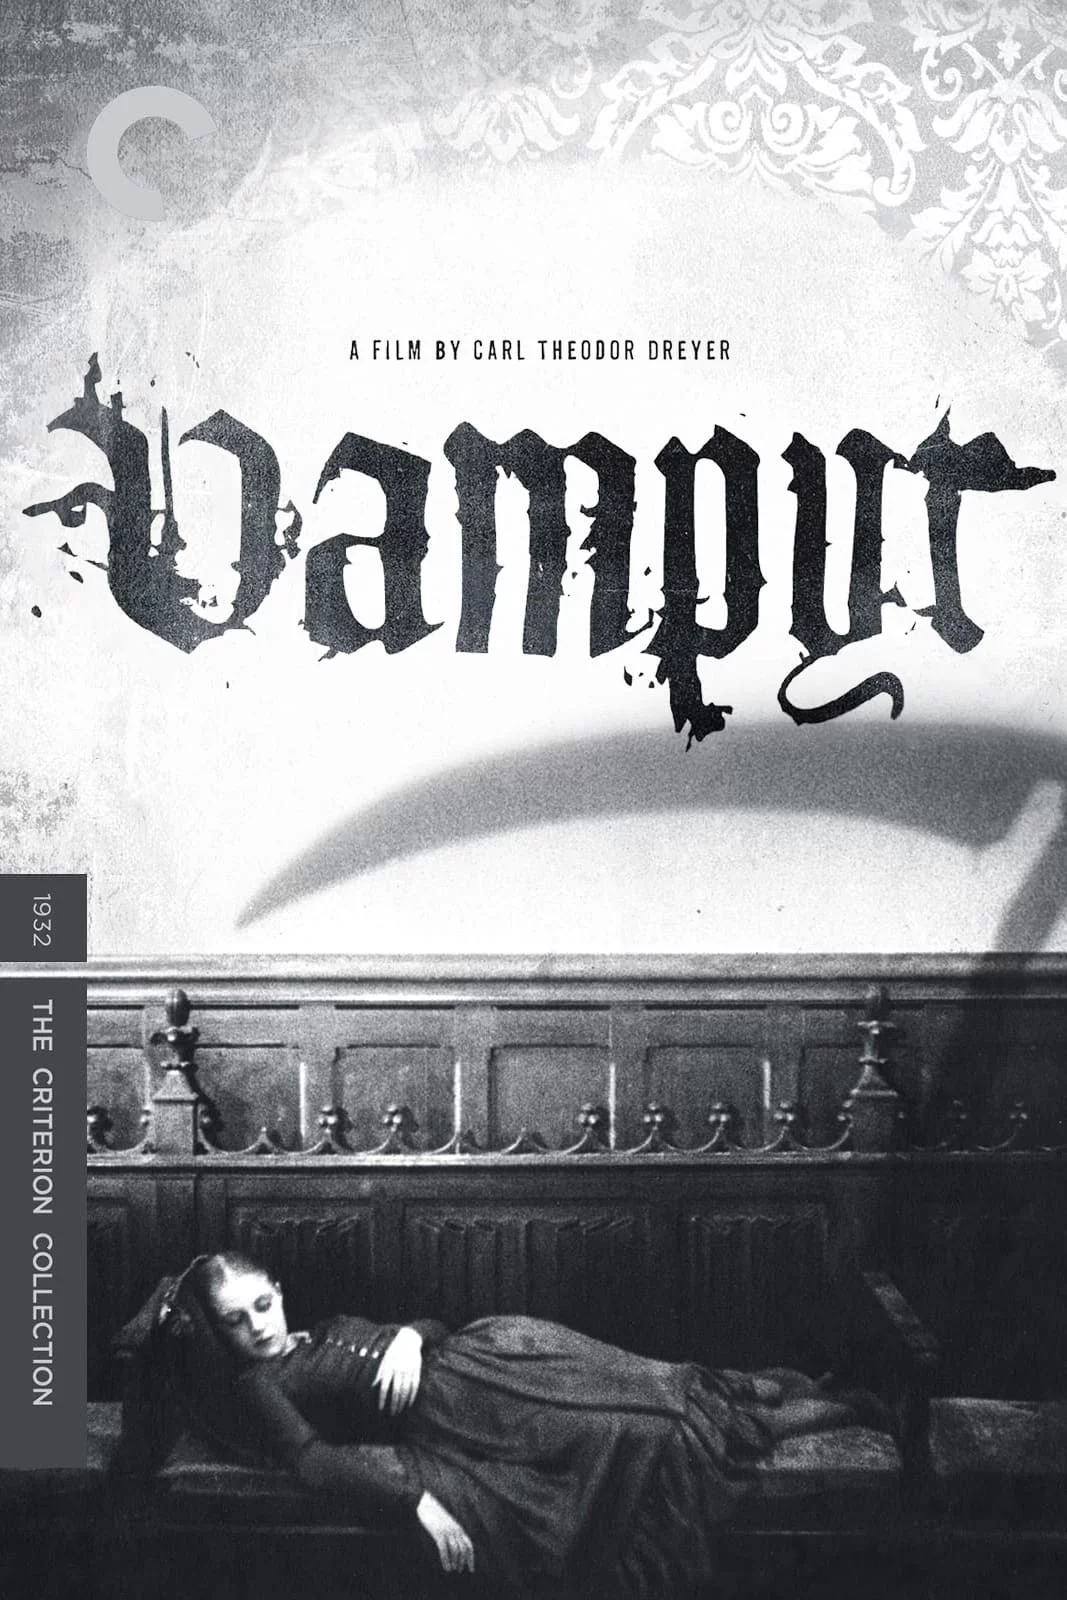 Photo du film : Vampyr